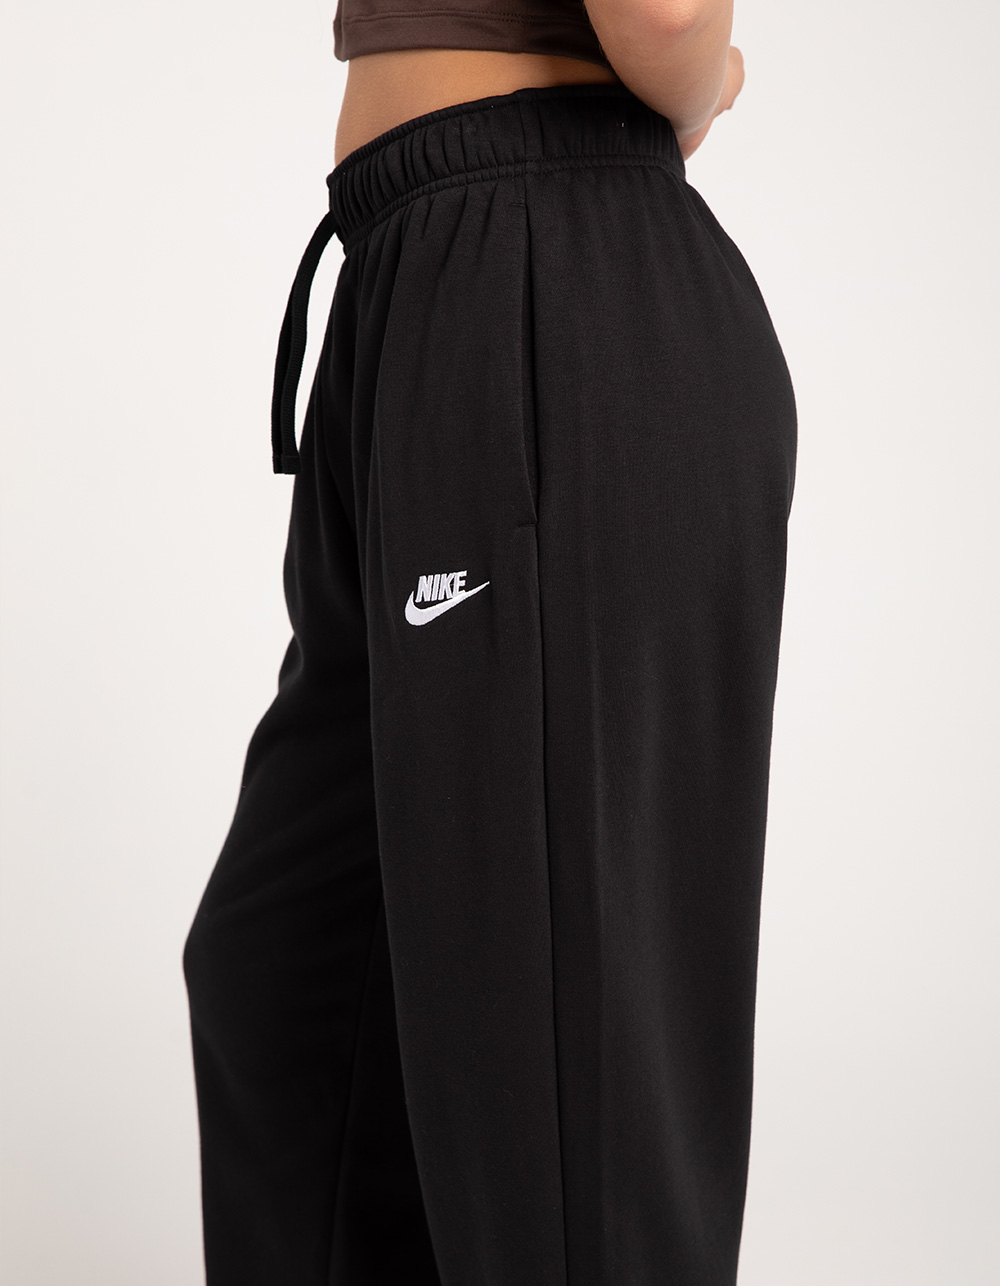 Nike Sweatpants Women